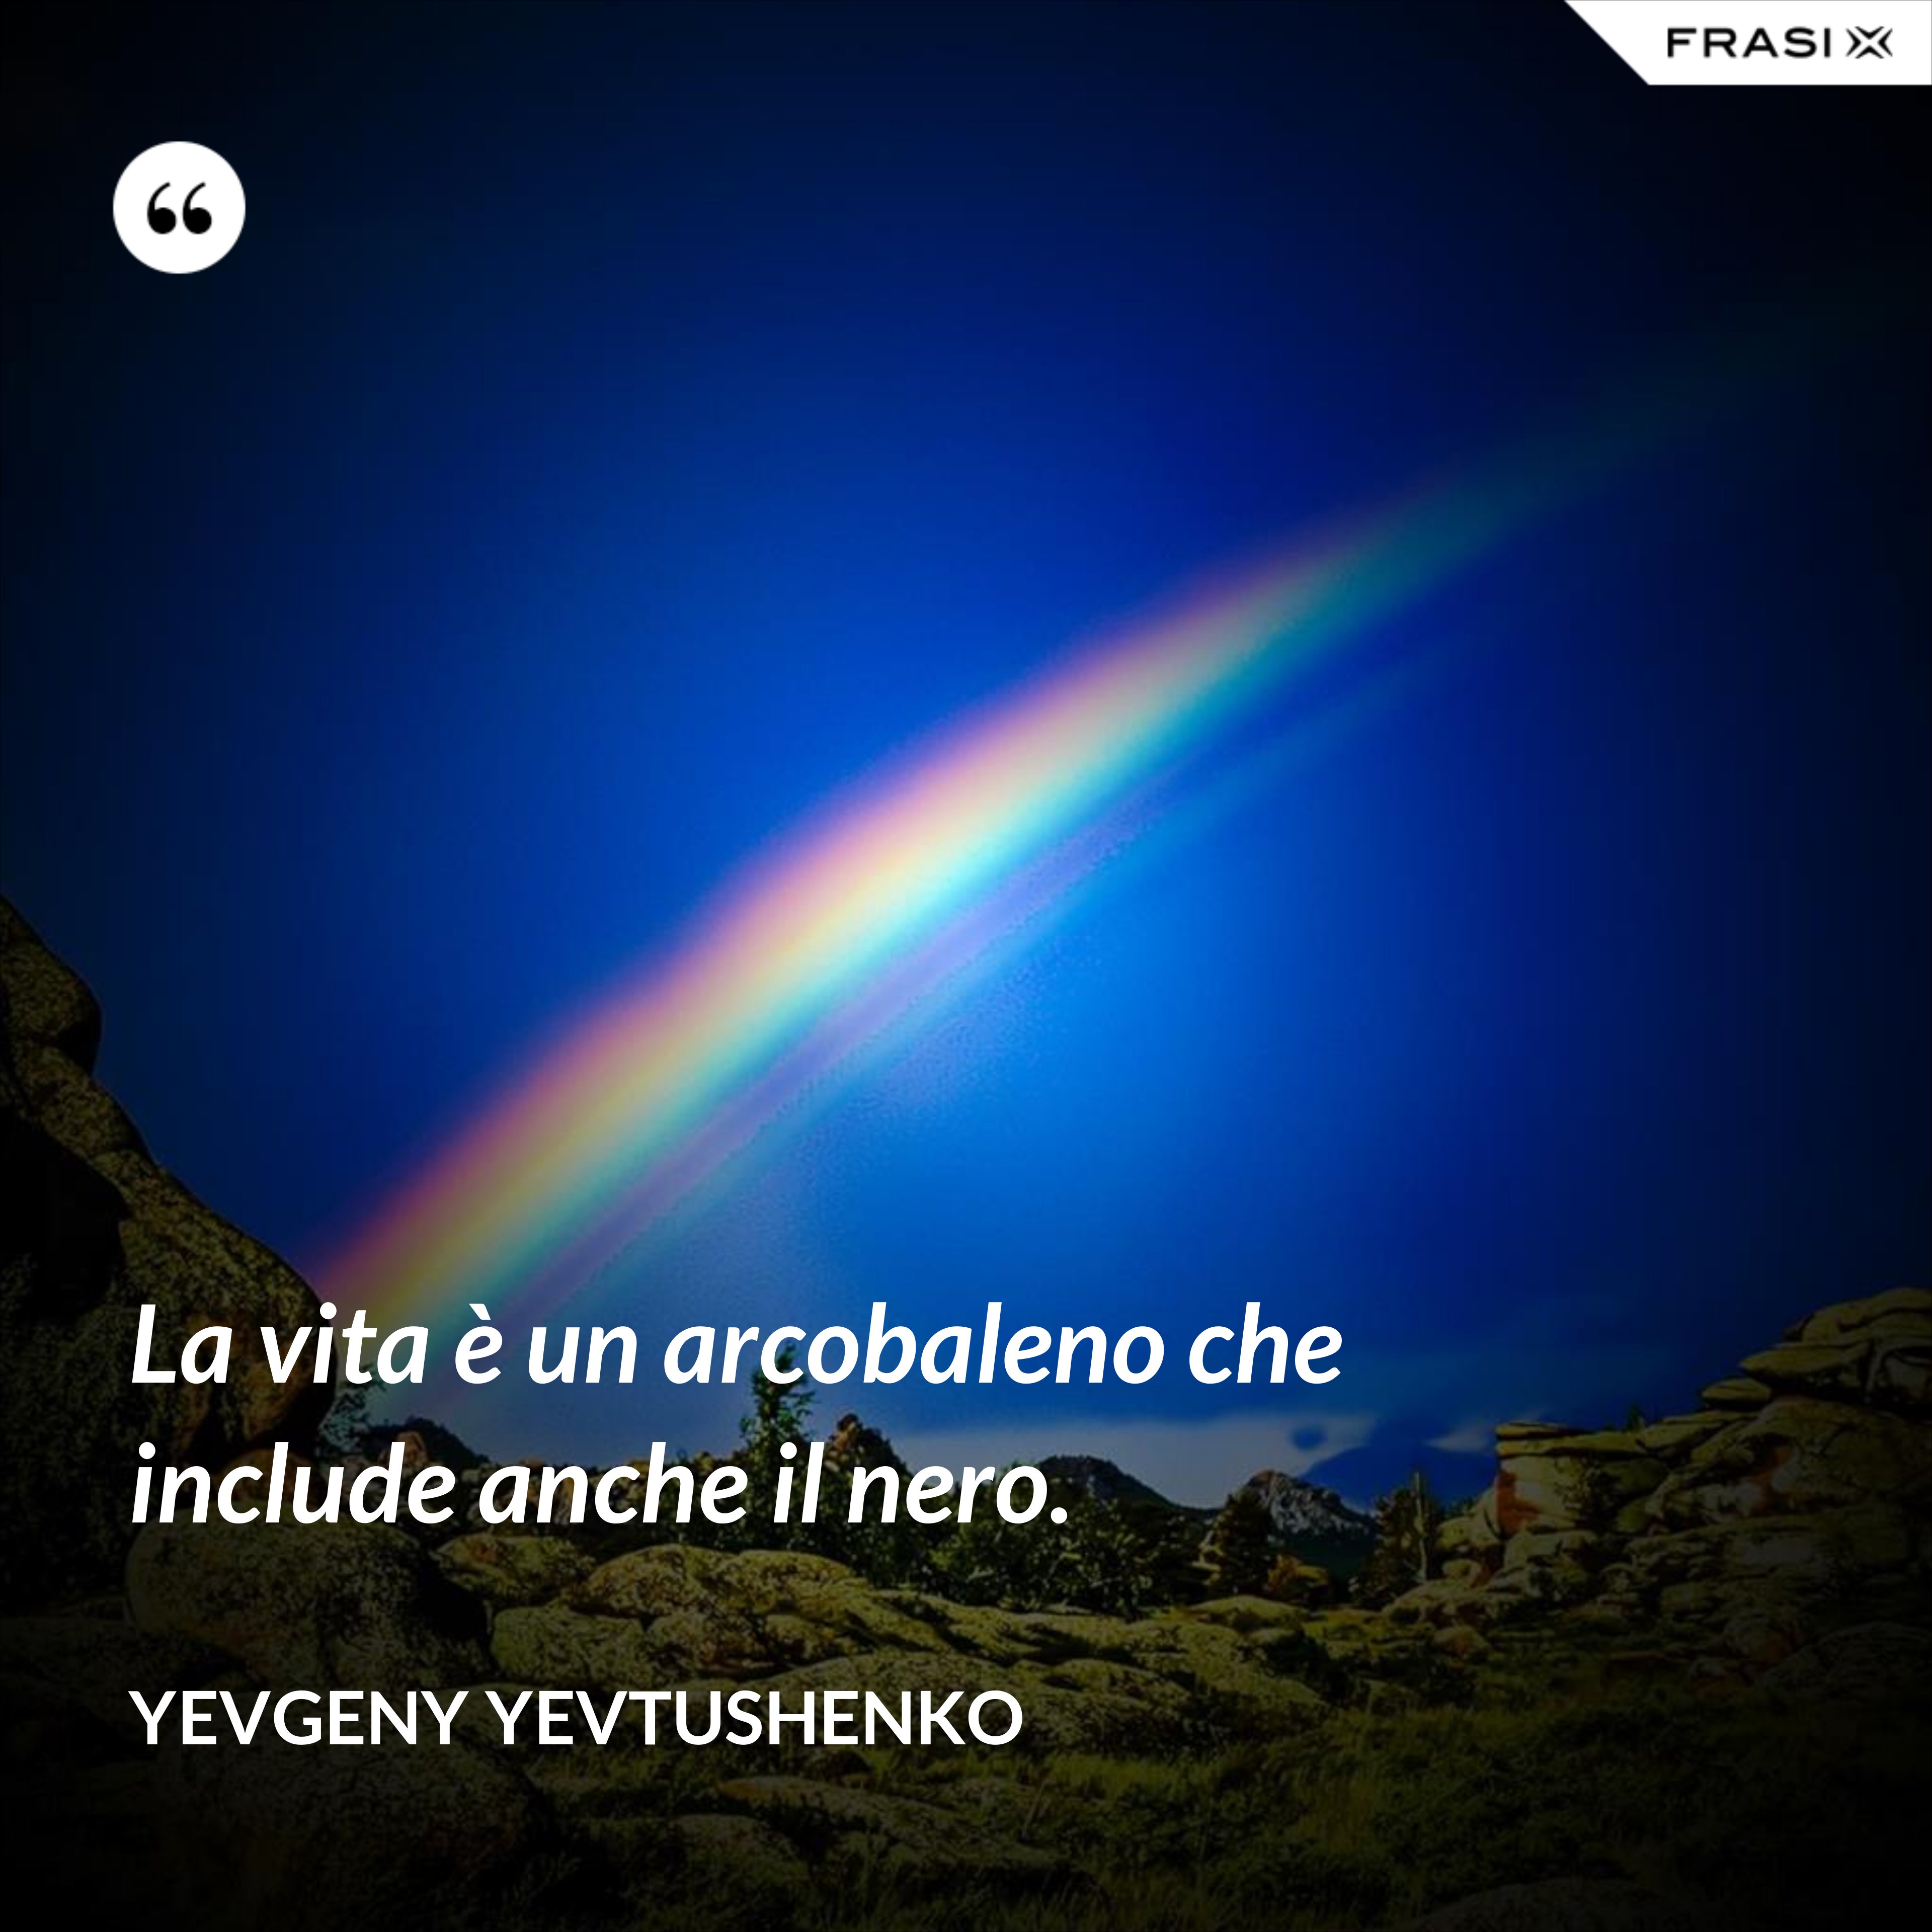 La vita è un arcobaleno che include anche il nero. - Yevgeny Yevtushenko